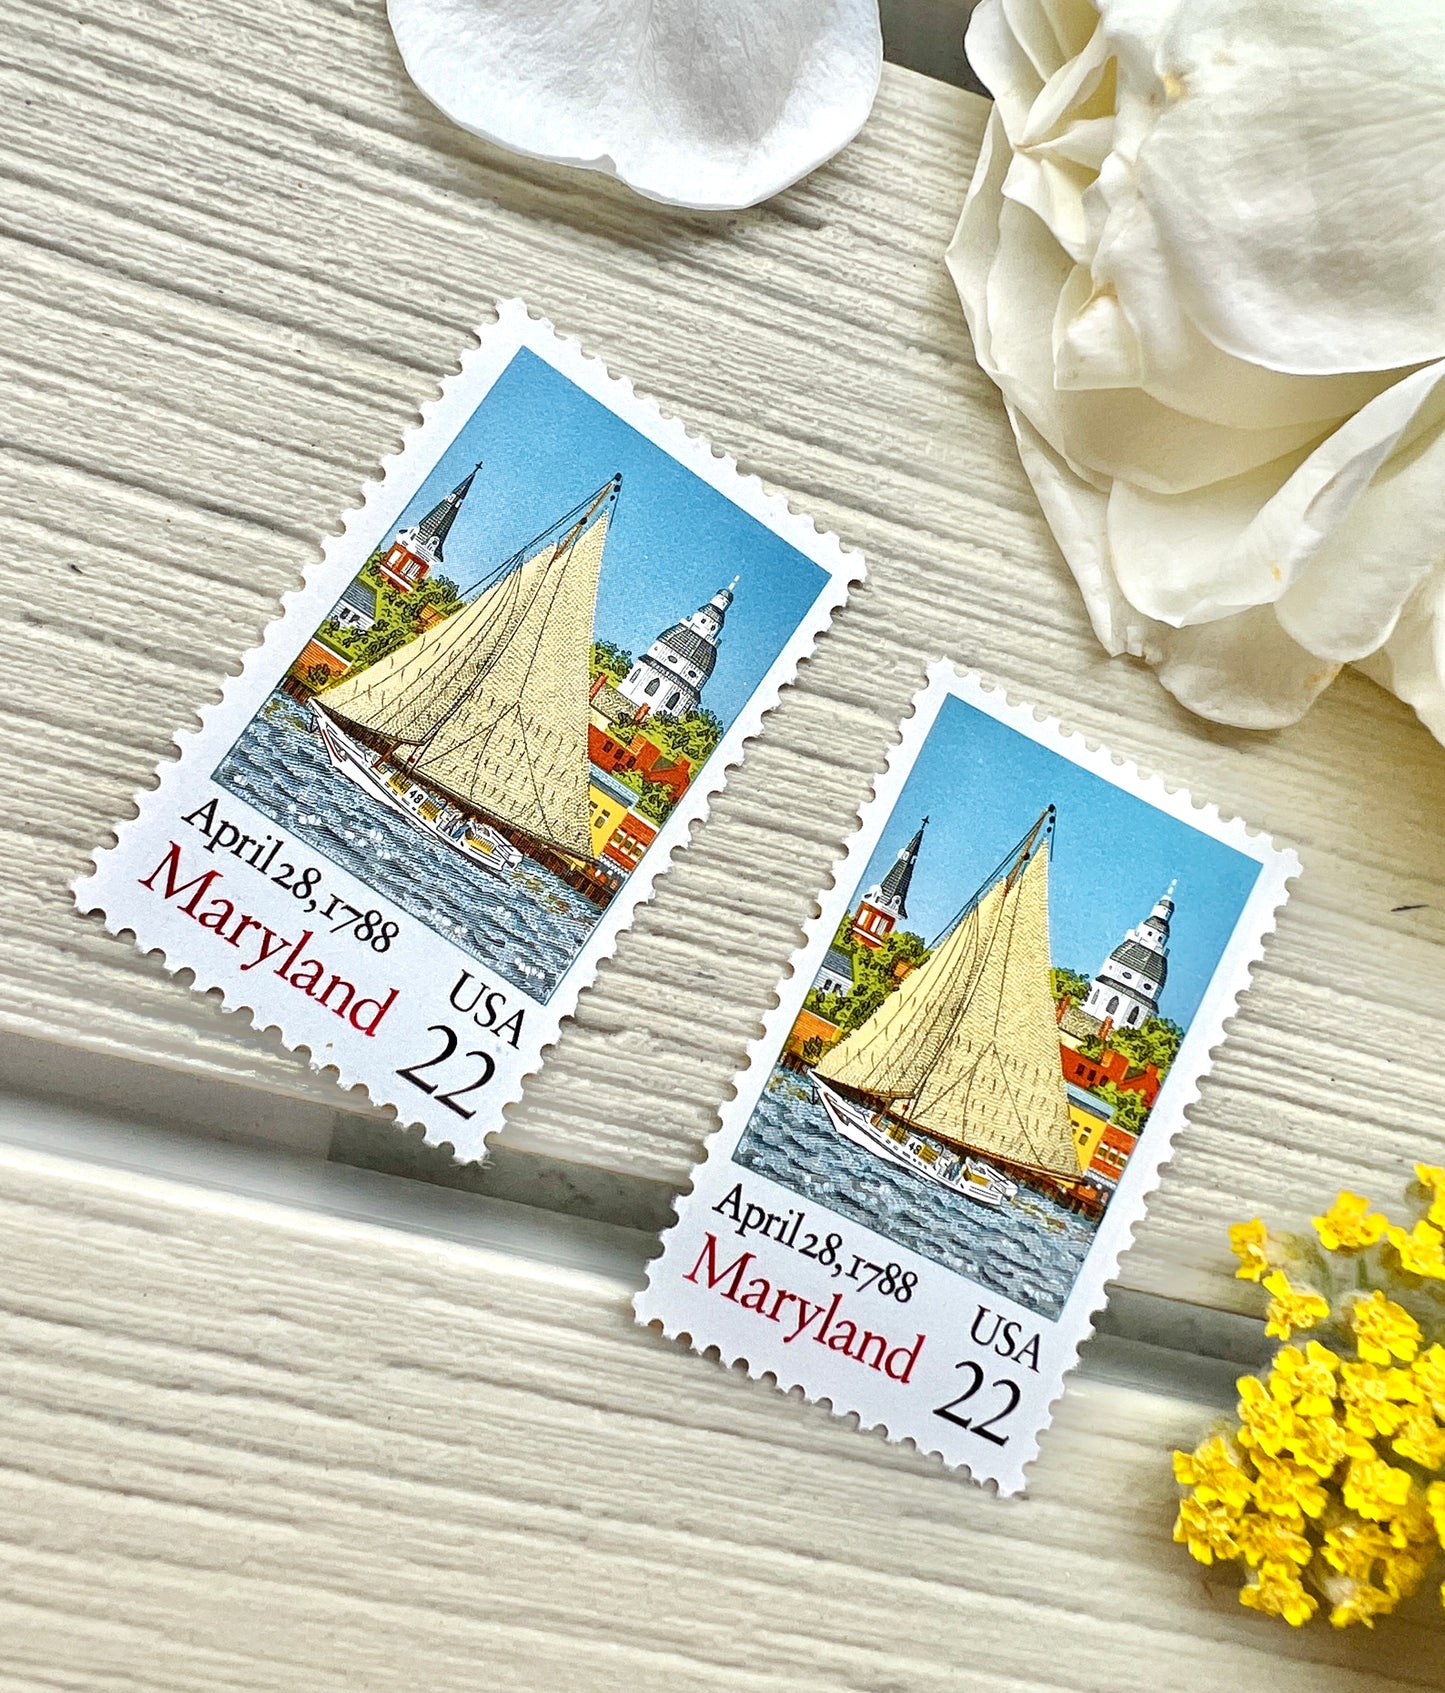 Maryland Statehood Stamps - Vintage Boat Stamps 22c